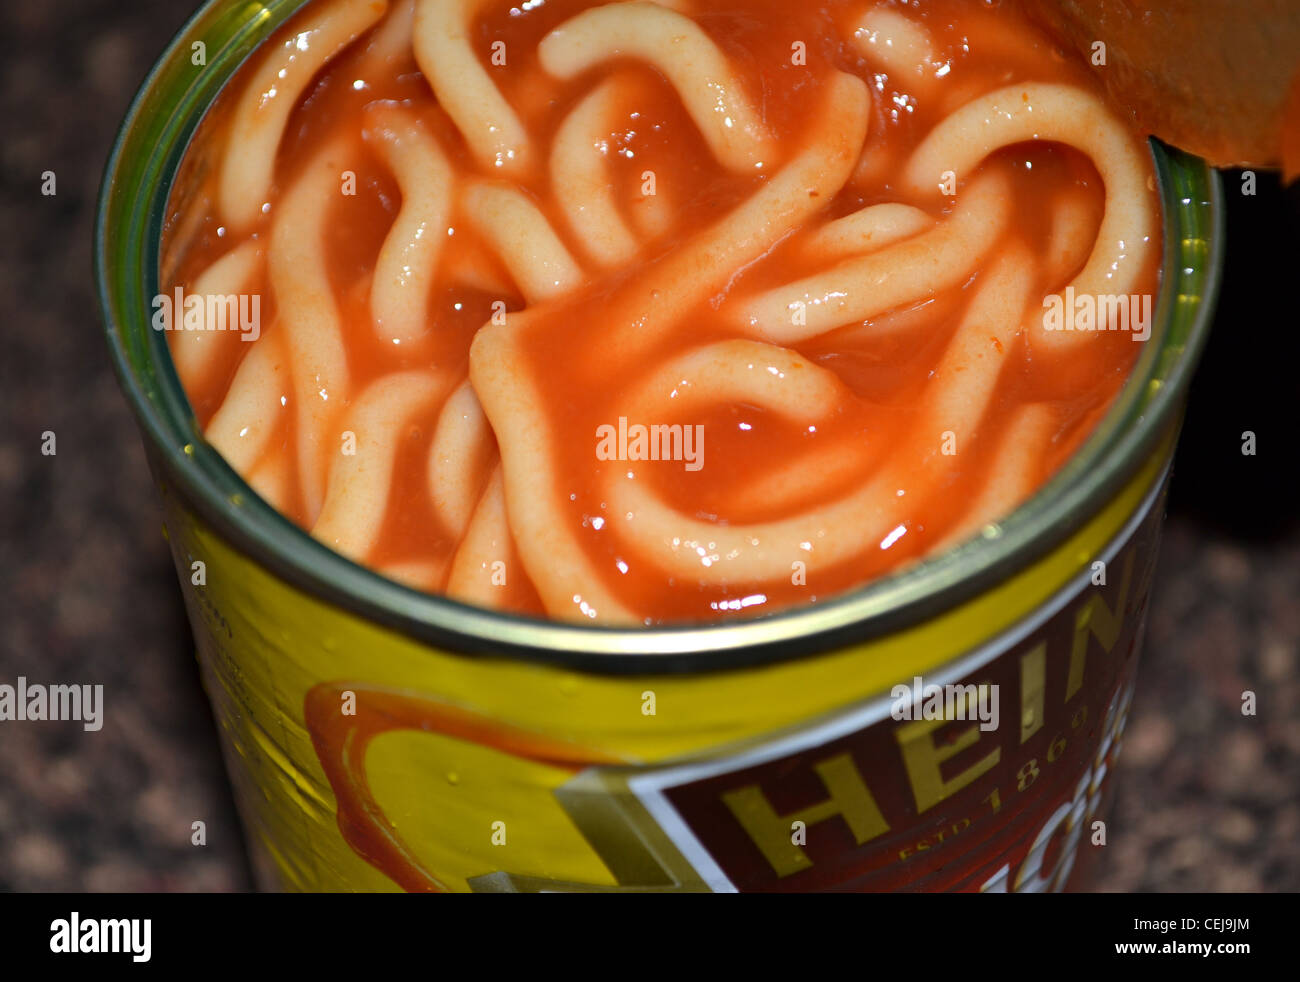 Spaghetti in scatola immagini e fotografie stock ad alta risoluzione - Alamy